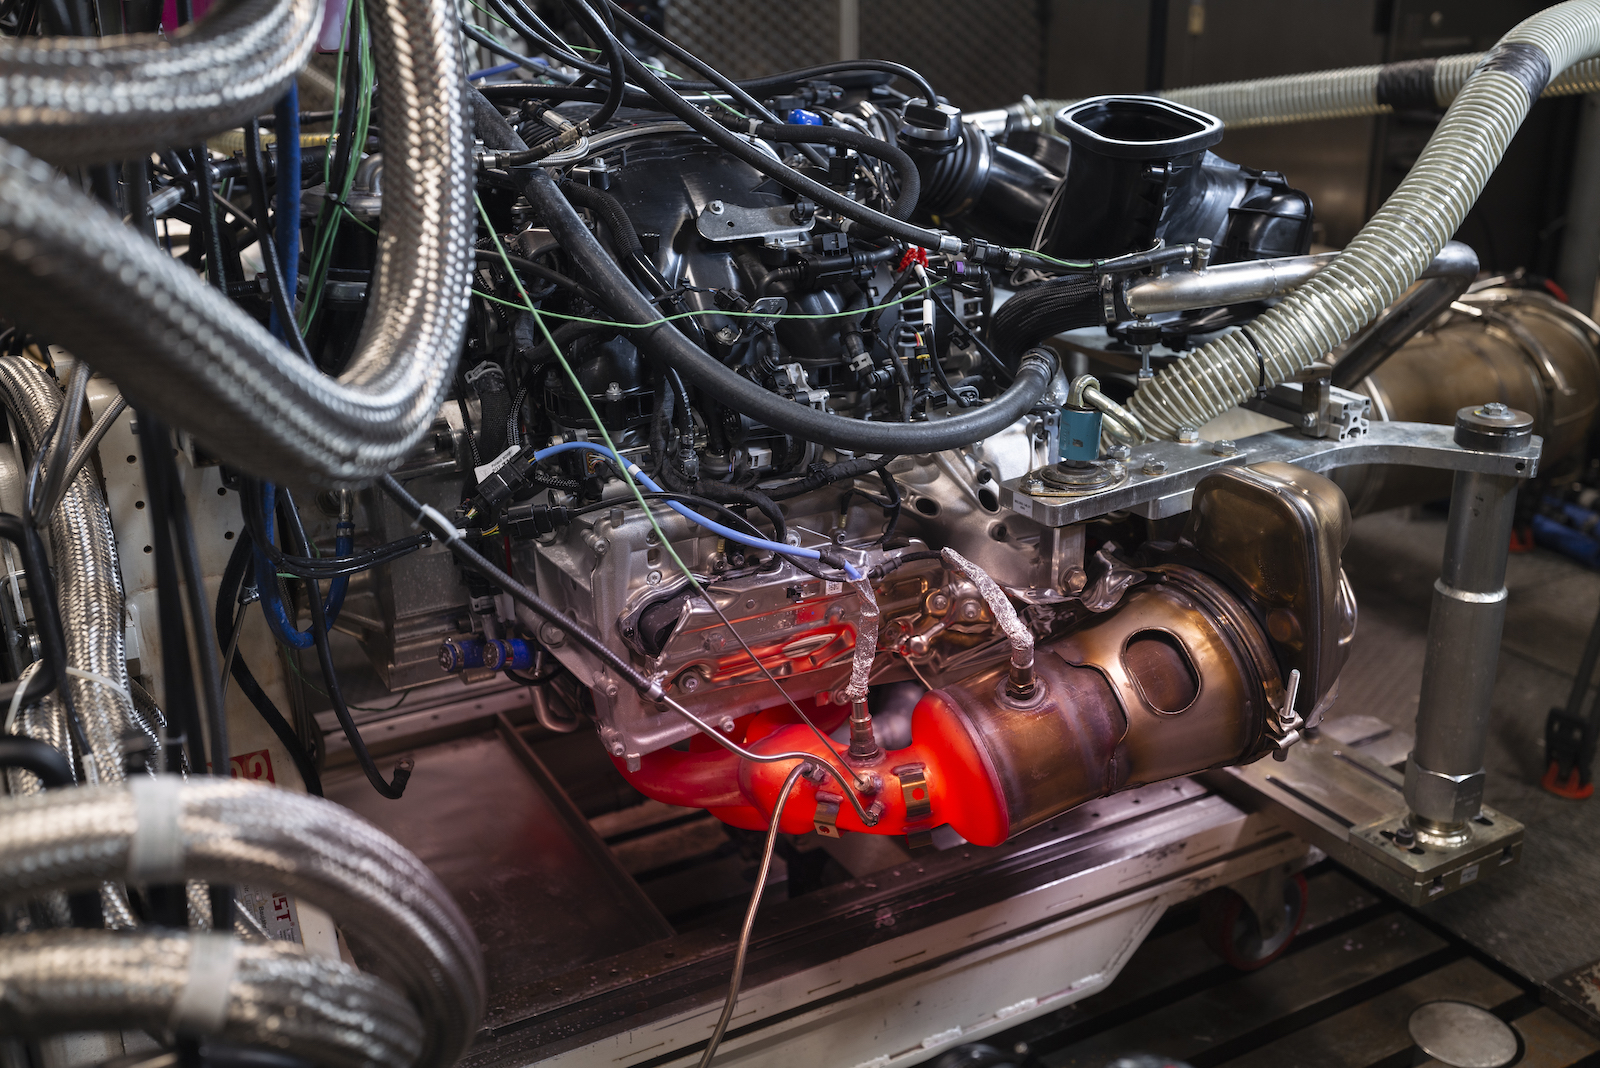 全新 GT3 的引擎在測試平台上運轉了 22,000 多個小時，且大多數時候，引擎是以全速運轉狀態，重複進行賽道模擬測試。